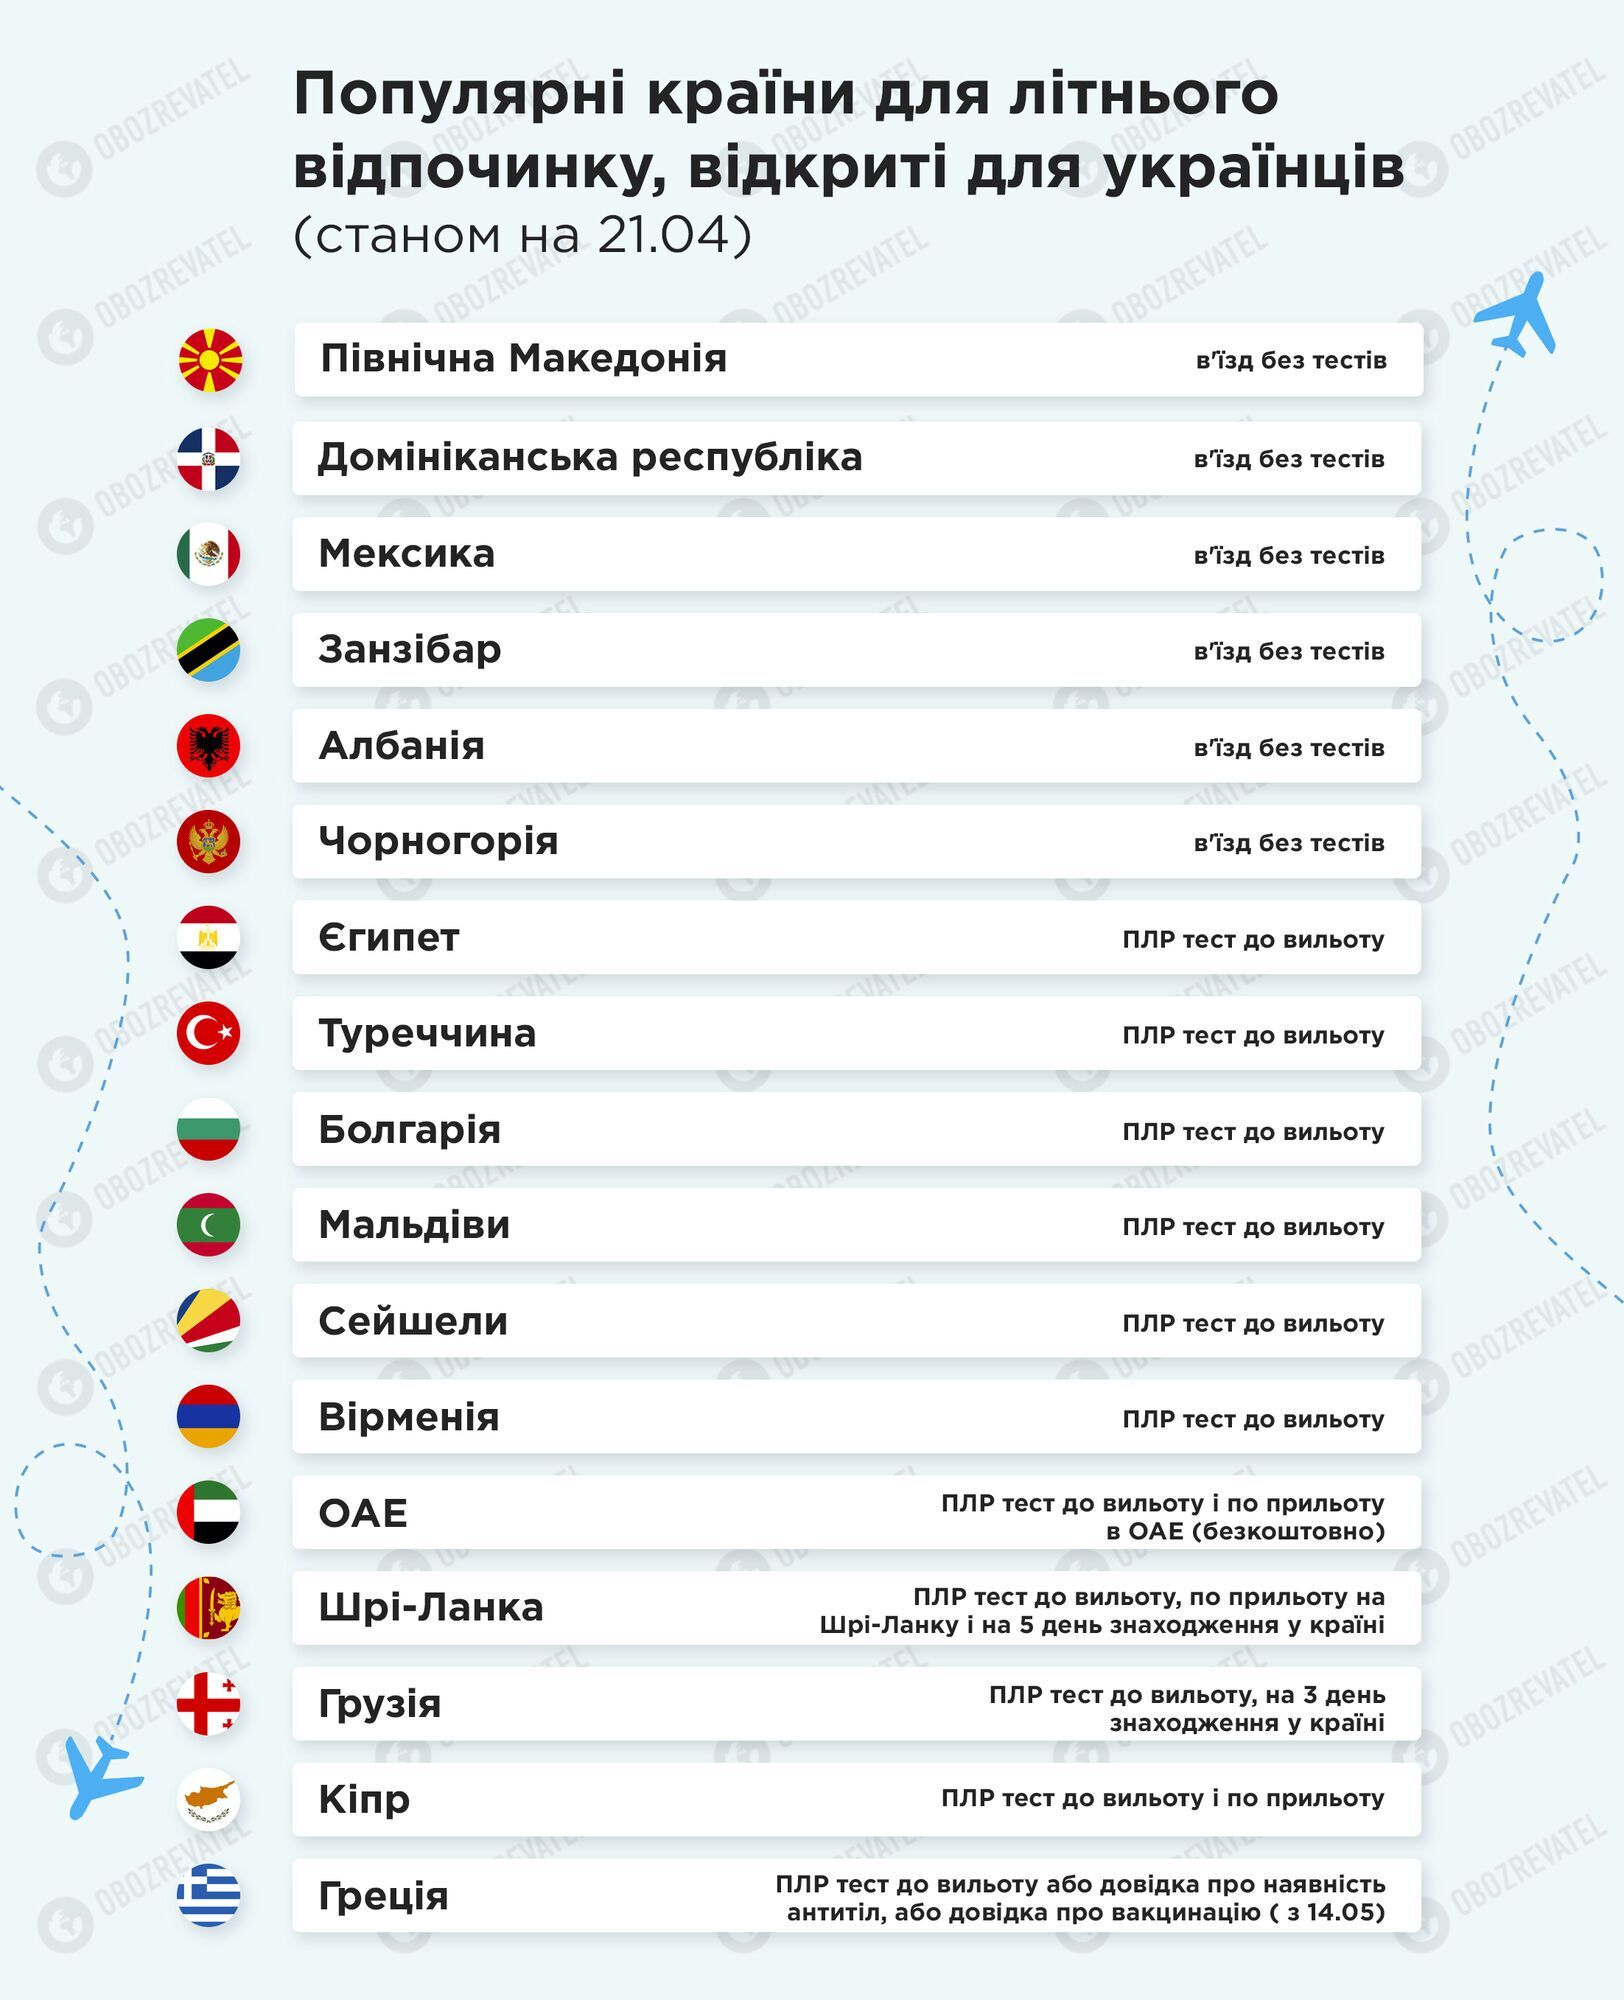 Украинцам для путешествий, кроме Италии, доступны еще 16 стран.